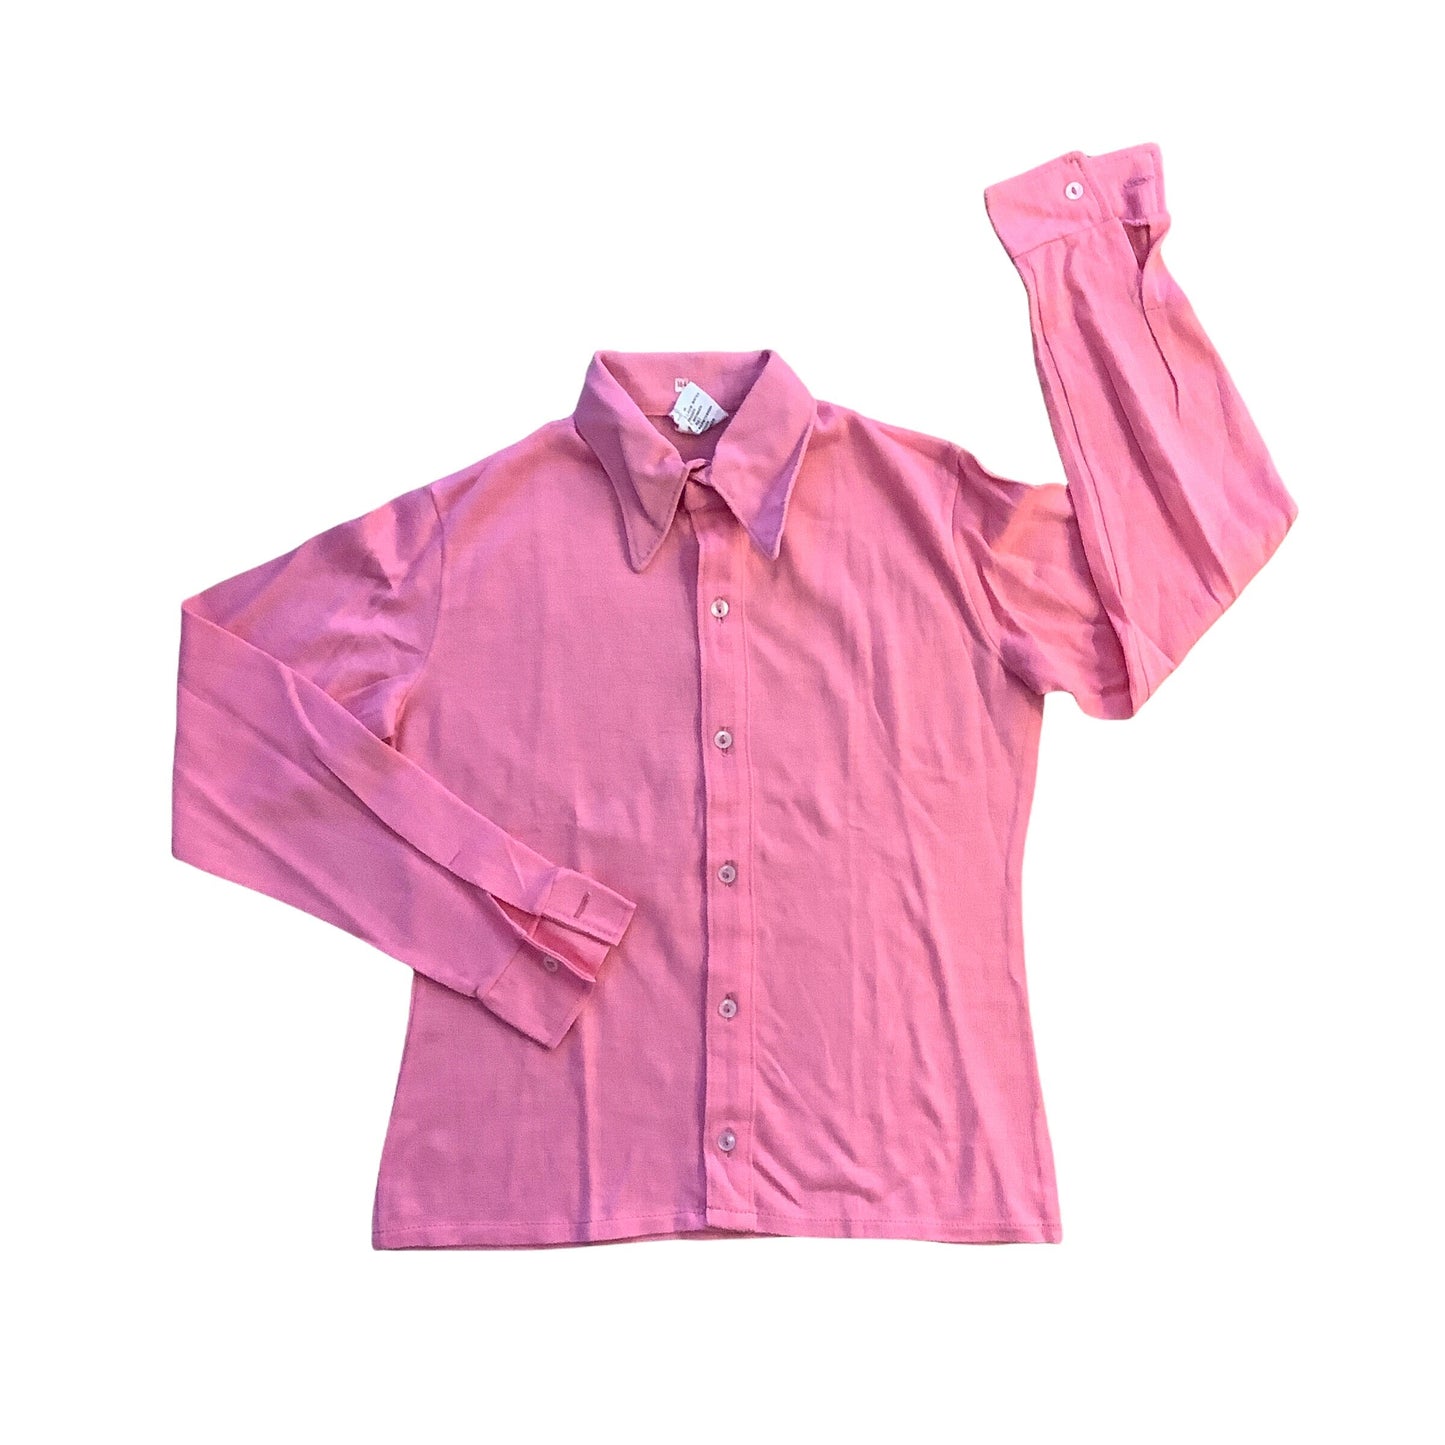 Vintage 1970's Children's Pink Shirt  10-12Y